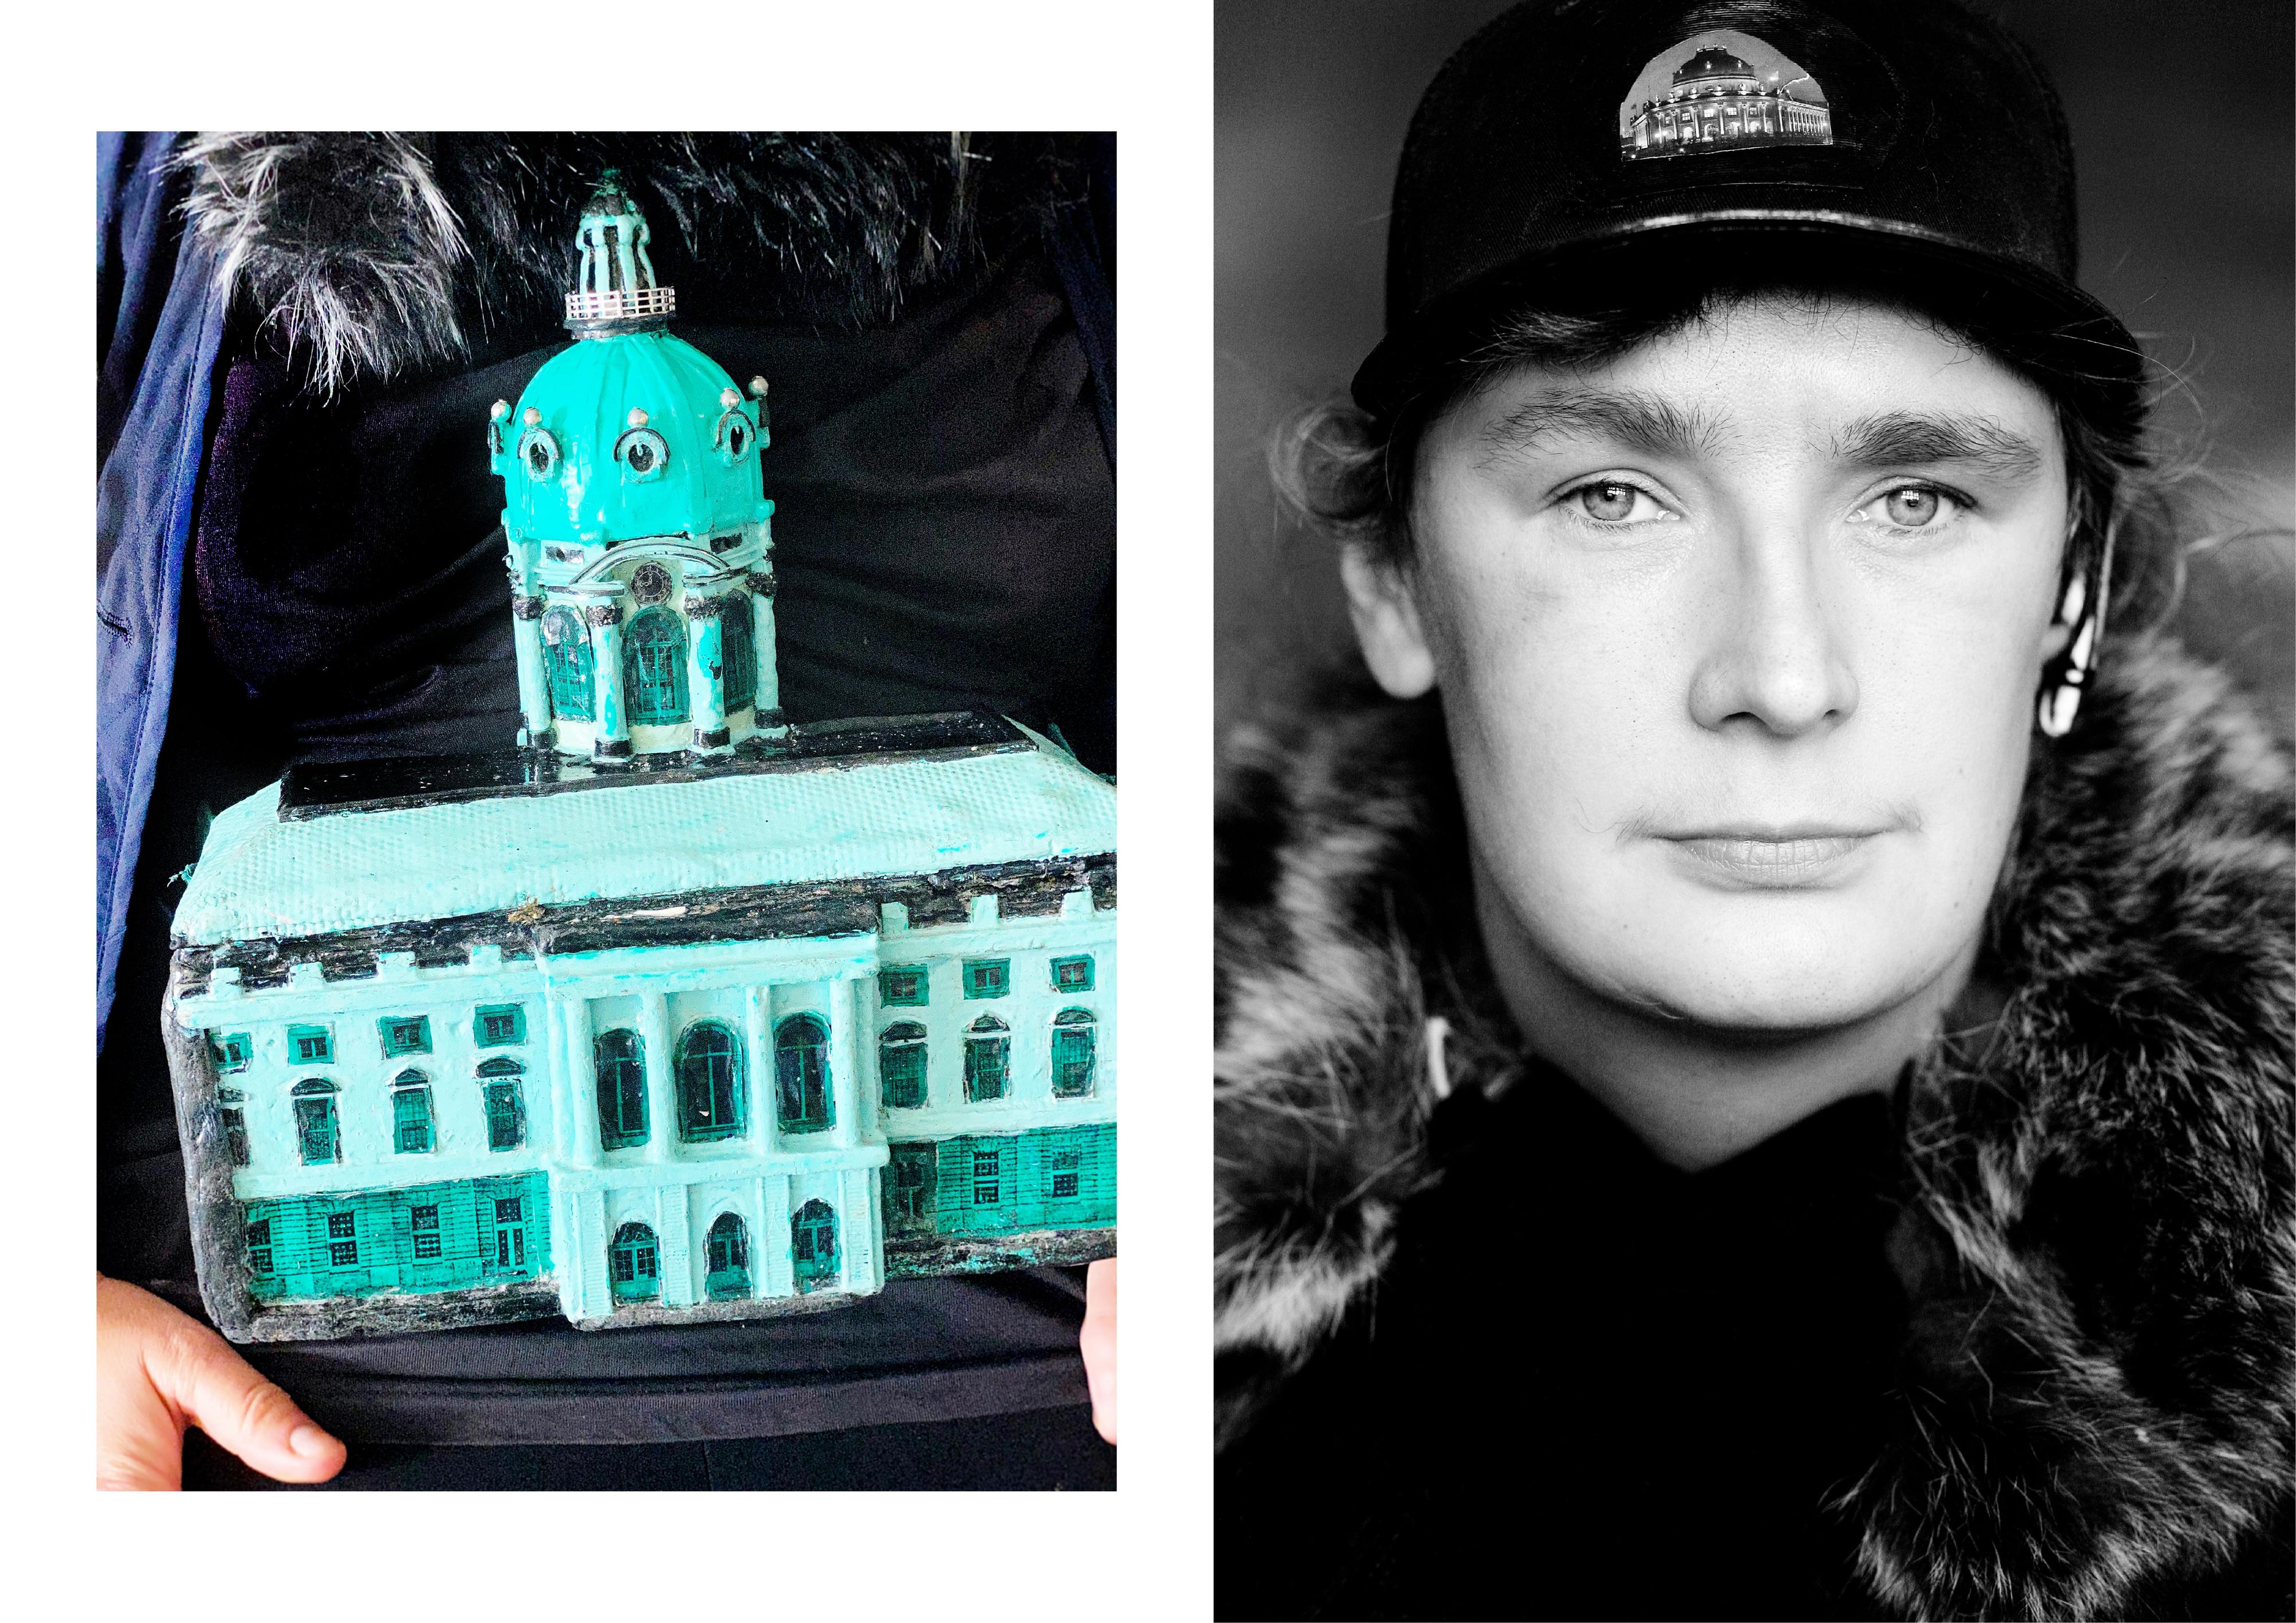 Collage aus zwei Bildern: Links: Modell eines Schlosses. Rechts: Porträt einer Frau mit Mütze.